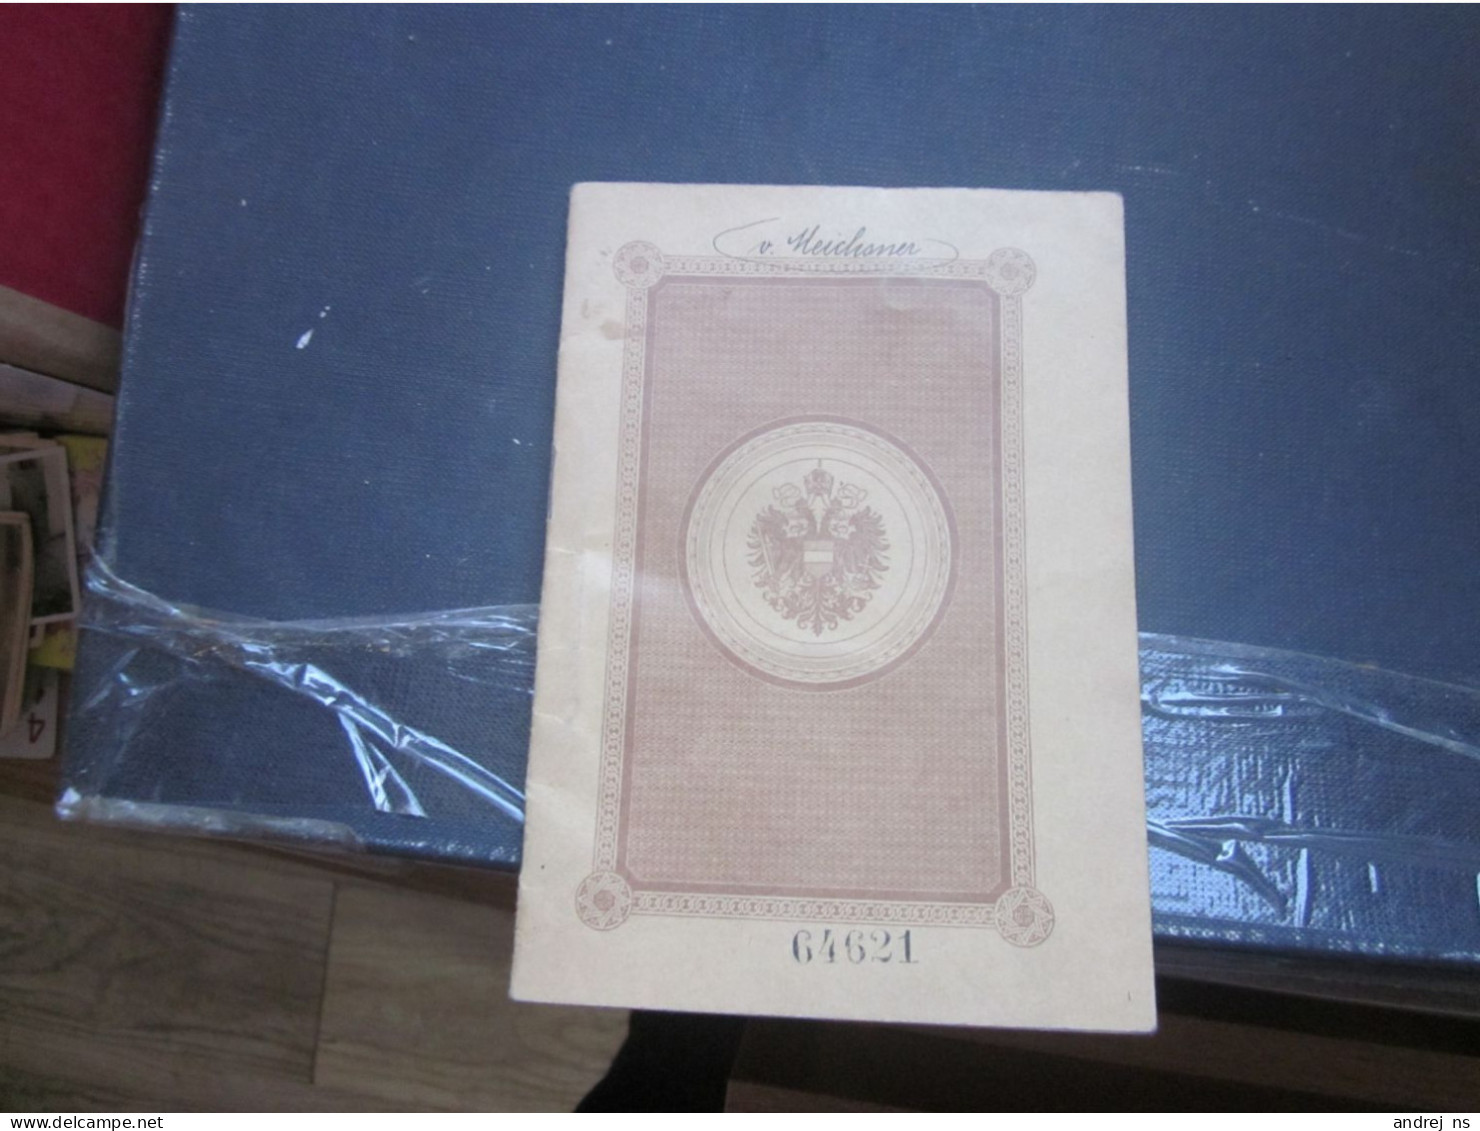 Austria Hungary Passport  Majestat Karl Wien 1917 Geburtsort Spalato Split NELLA MEICHSNER VON Meichsenau RRR EXTRA - Documentos Históricos